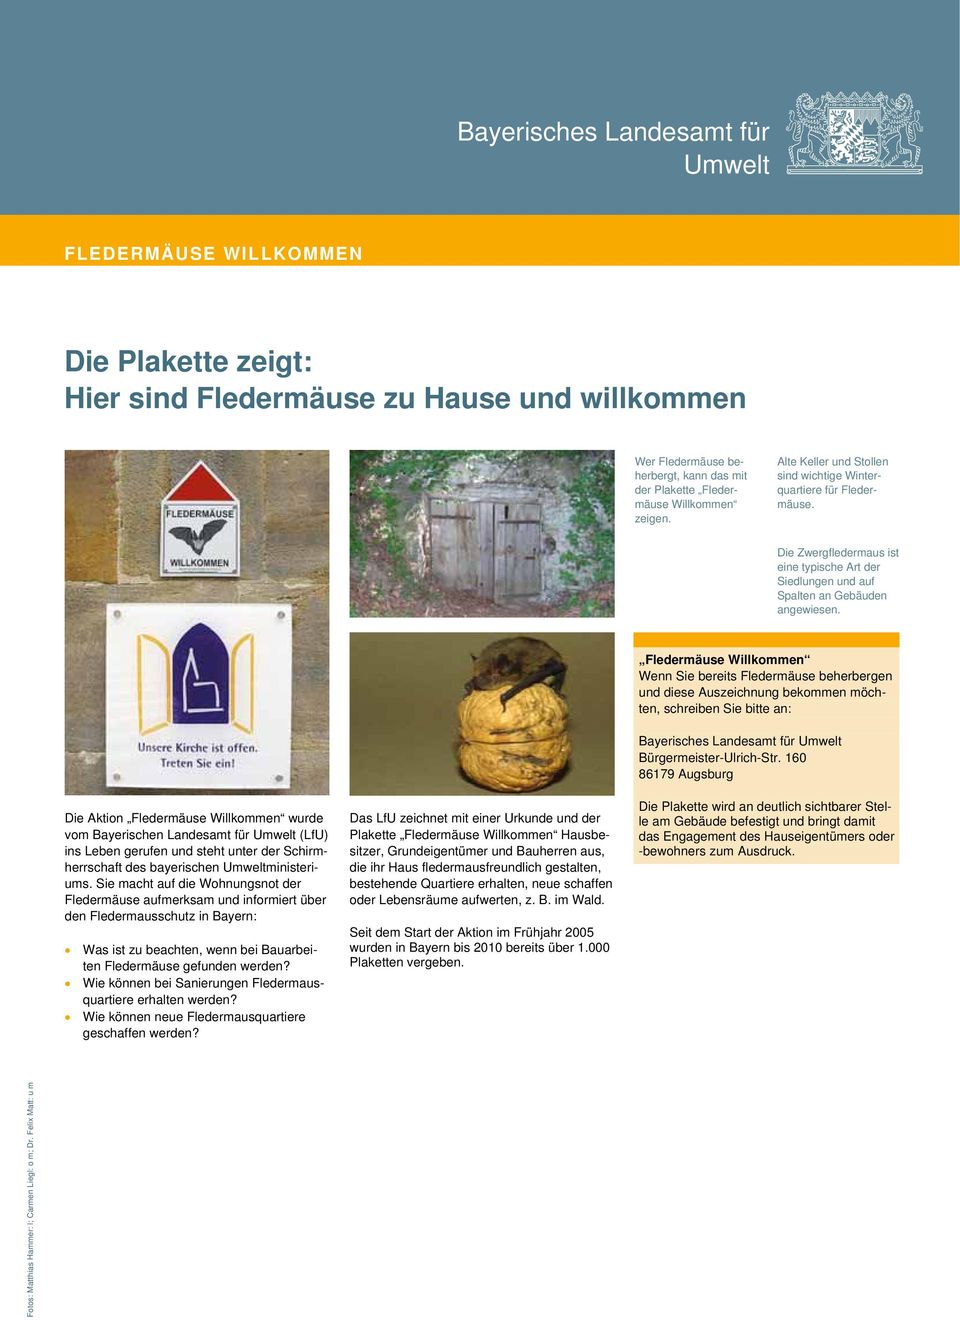 Die Aktion Fledermäuse Willkommen wurde vom Bayerischen Landesamt für (LfU) ins Leben gerufen und steht unter der Schirmherrschaft des bayerischen ministeriums.